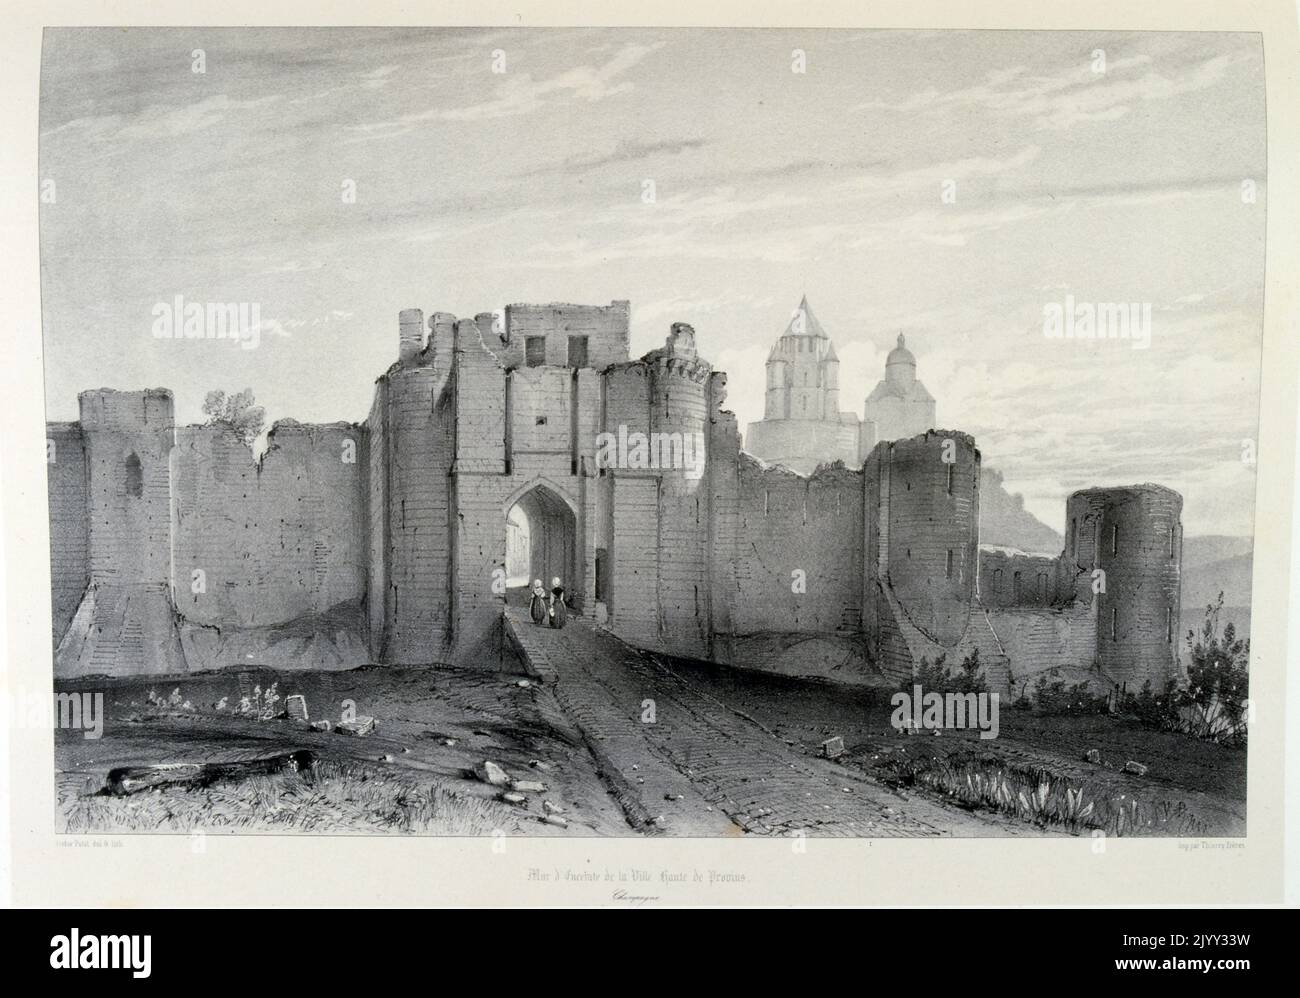 Approccio alla città di Provins, nella Francia nord-centrale vicino a Parigi. La sua architettura medievale comprende alti bastioni con porte fortificate. 19th ° secolo, 1857 Foto Stock